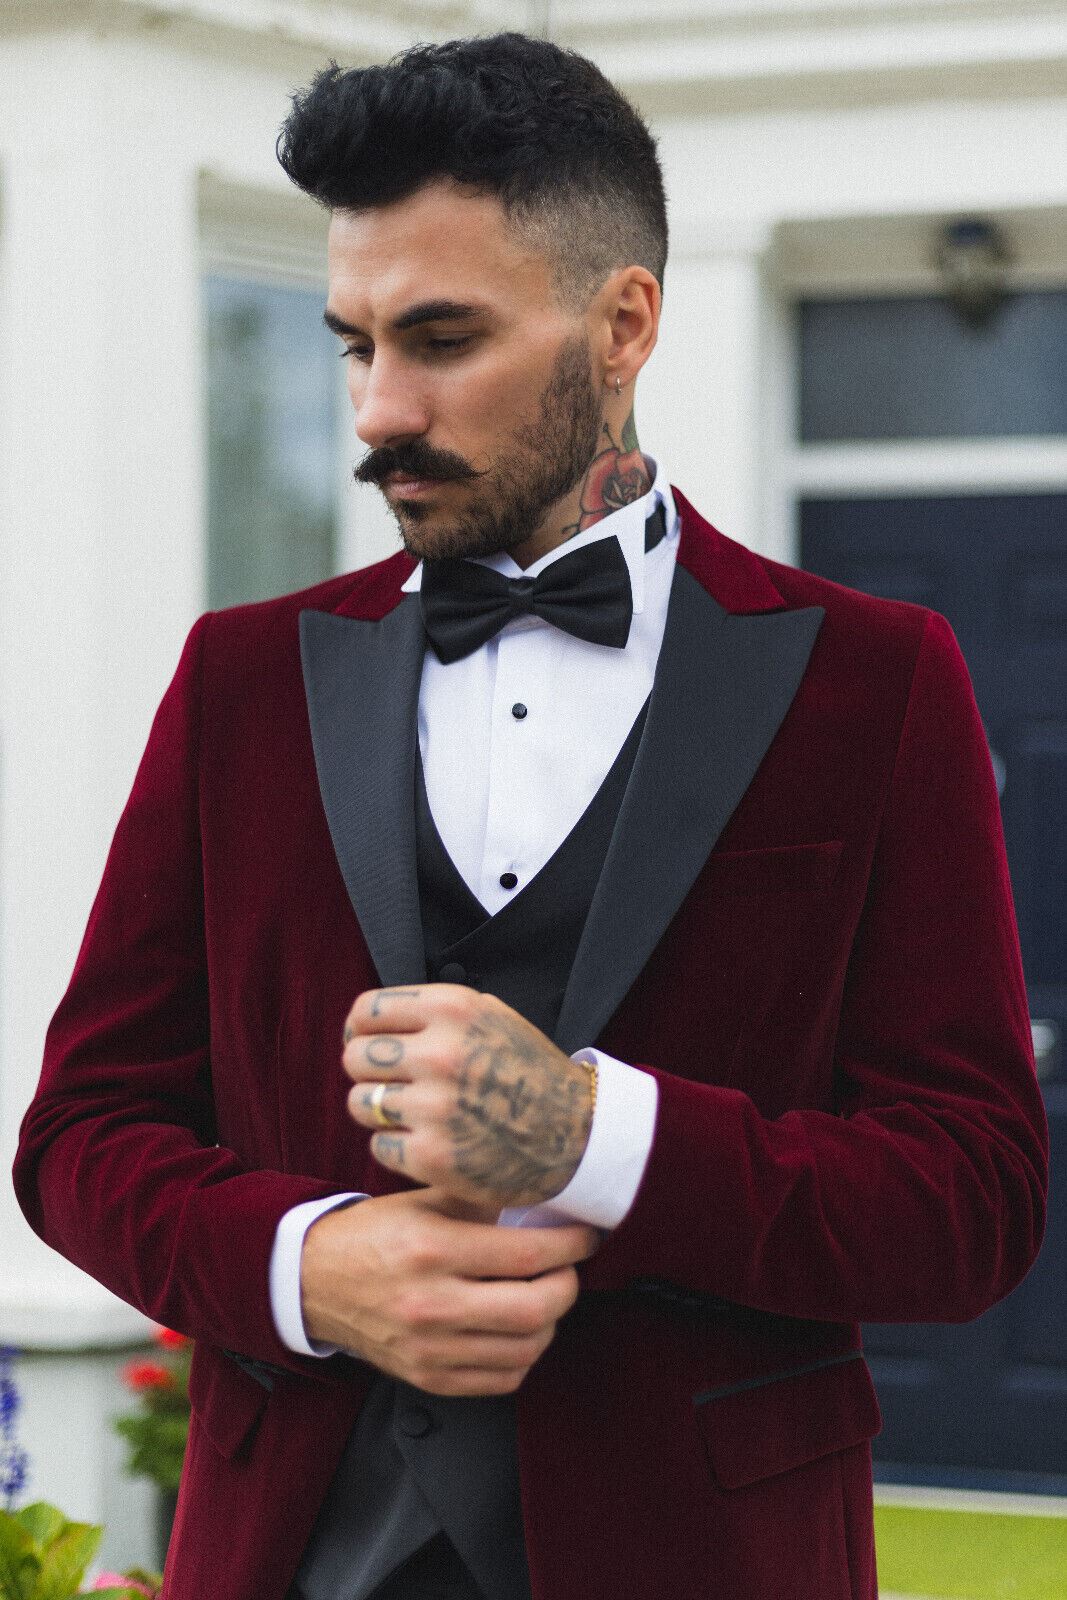 Mens Burgundy Velvet Dinner Tuxedo Suit Jacket Blazer - Upperclass Fashions 